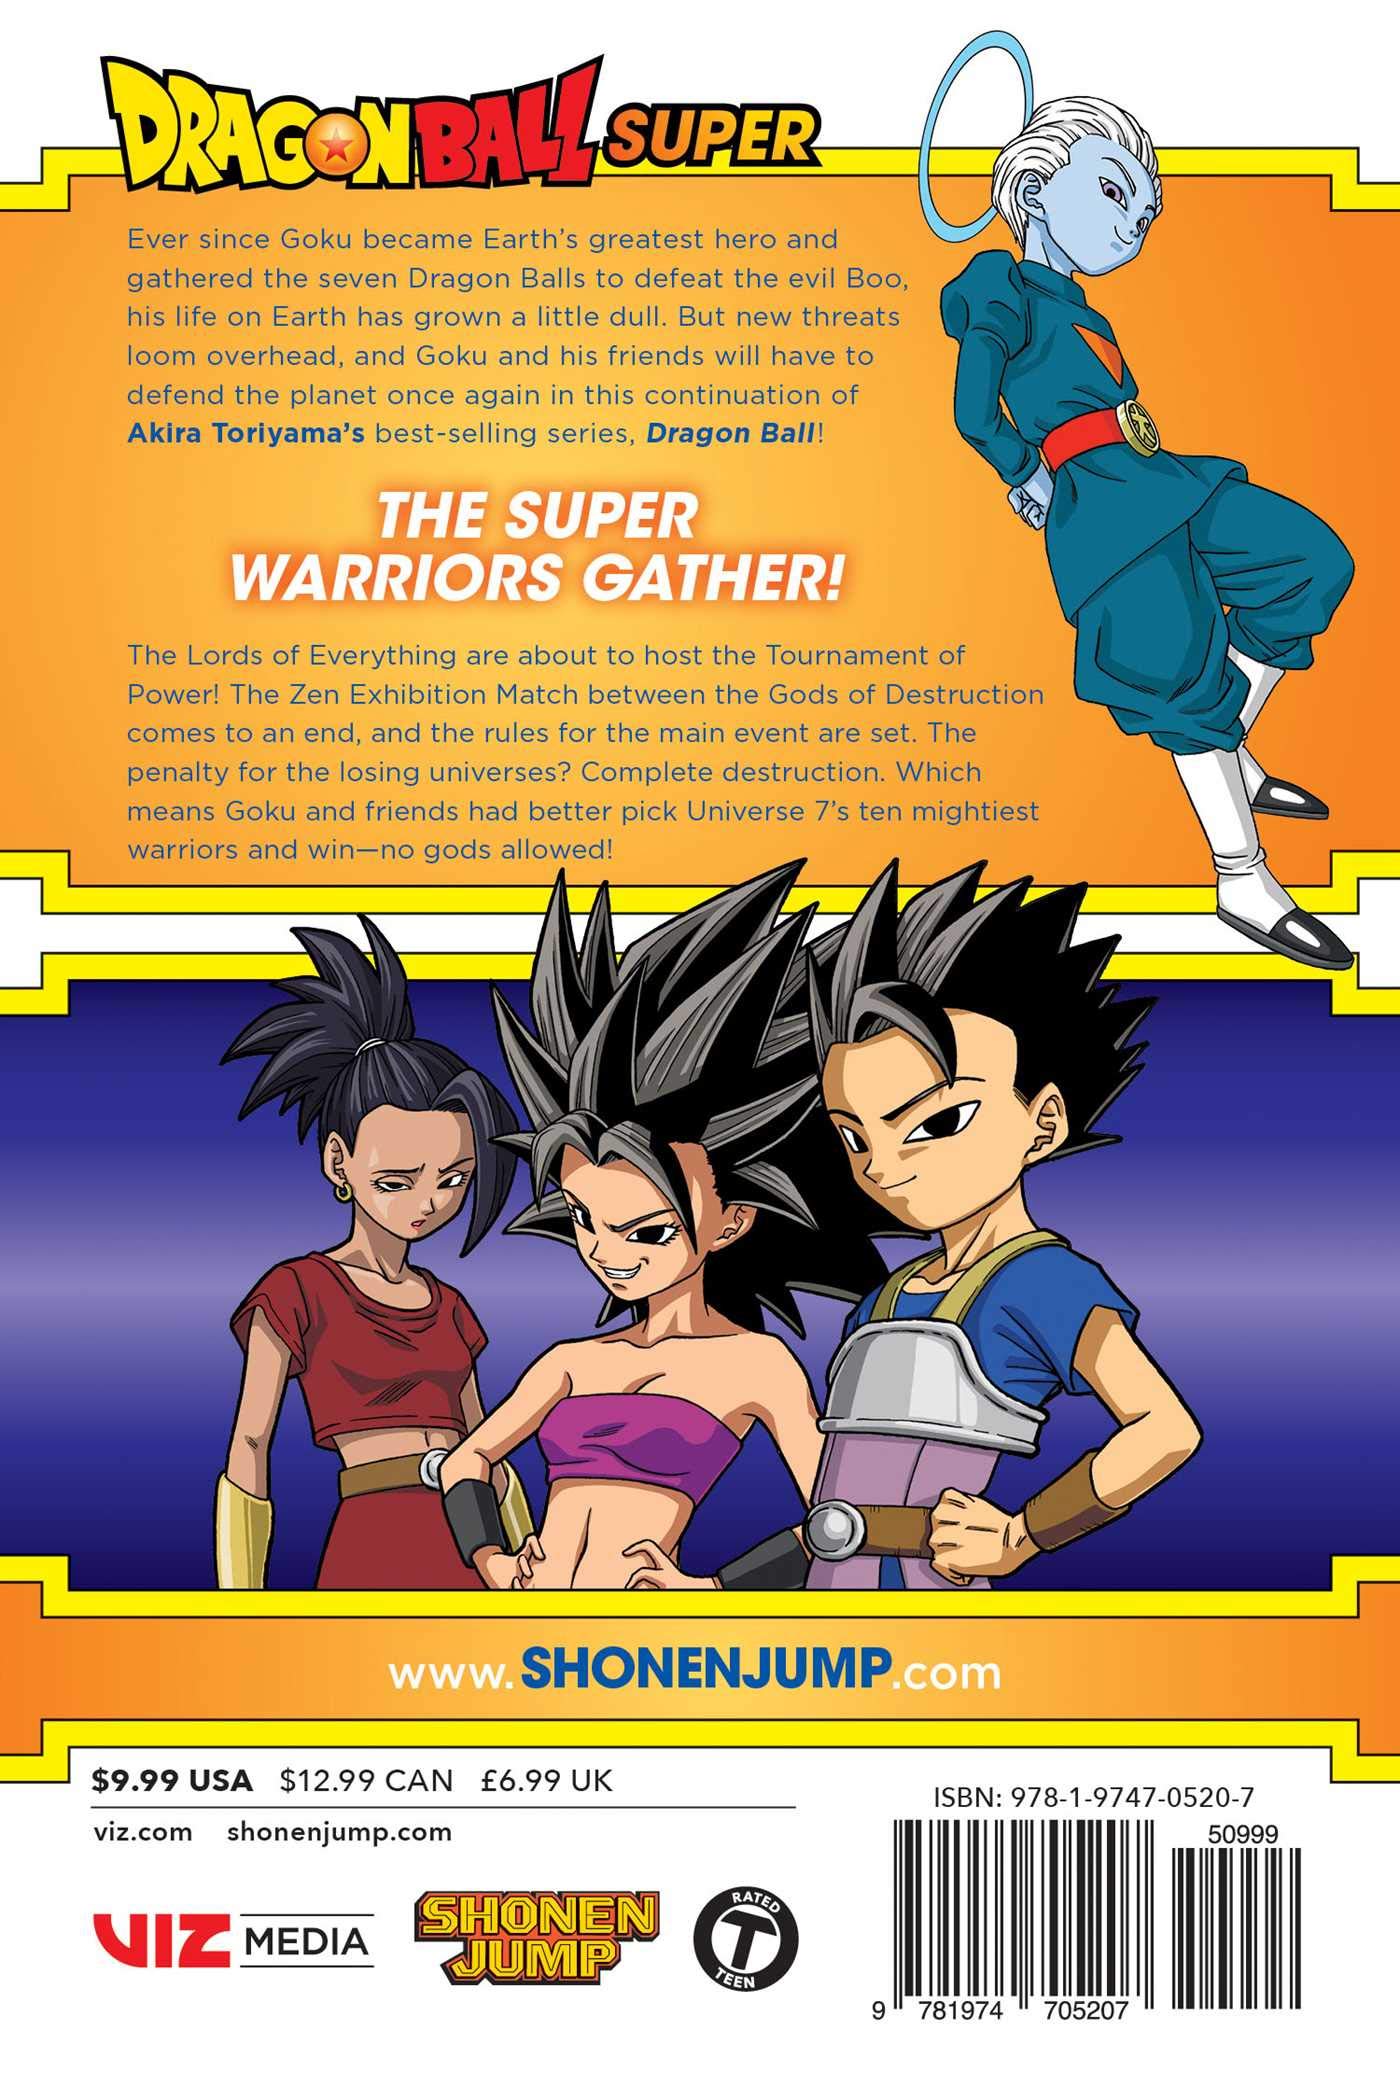 Manga: Dragon Ball Super vol. 06 Panini em Promoção na Americanas